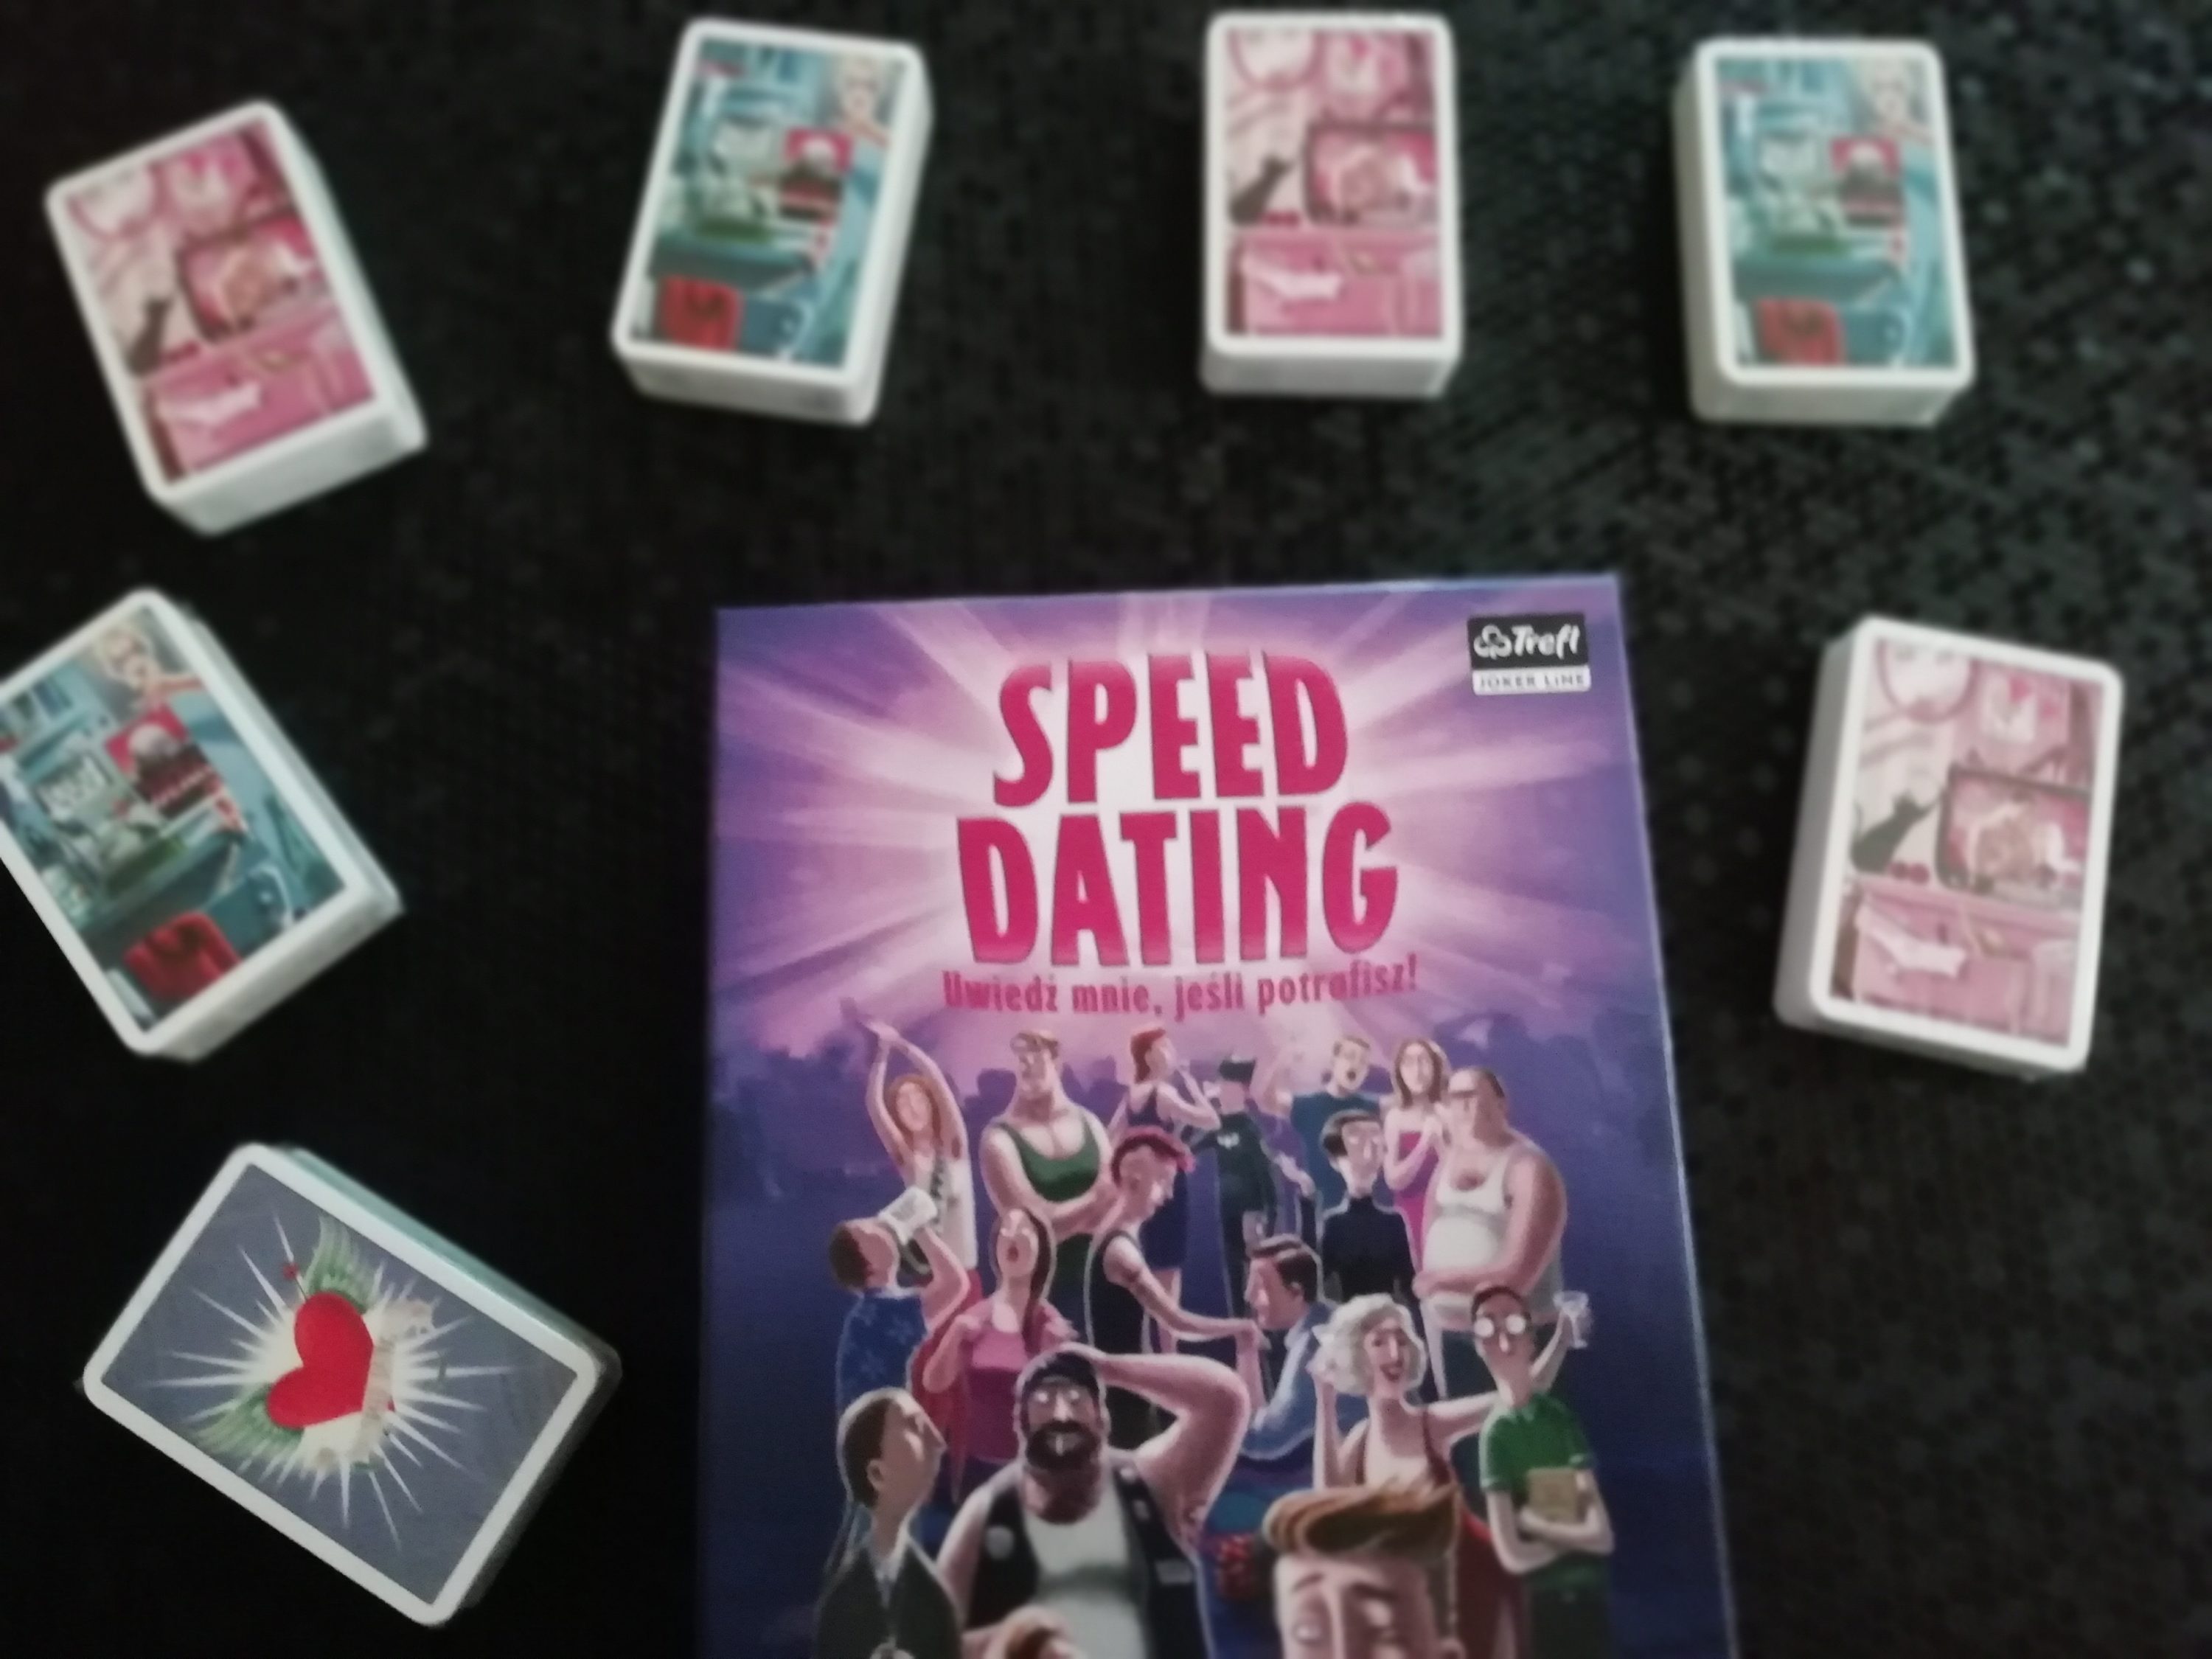 Flirt to podstawa udanego związku! „Speed Dating” – recenzja gry